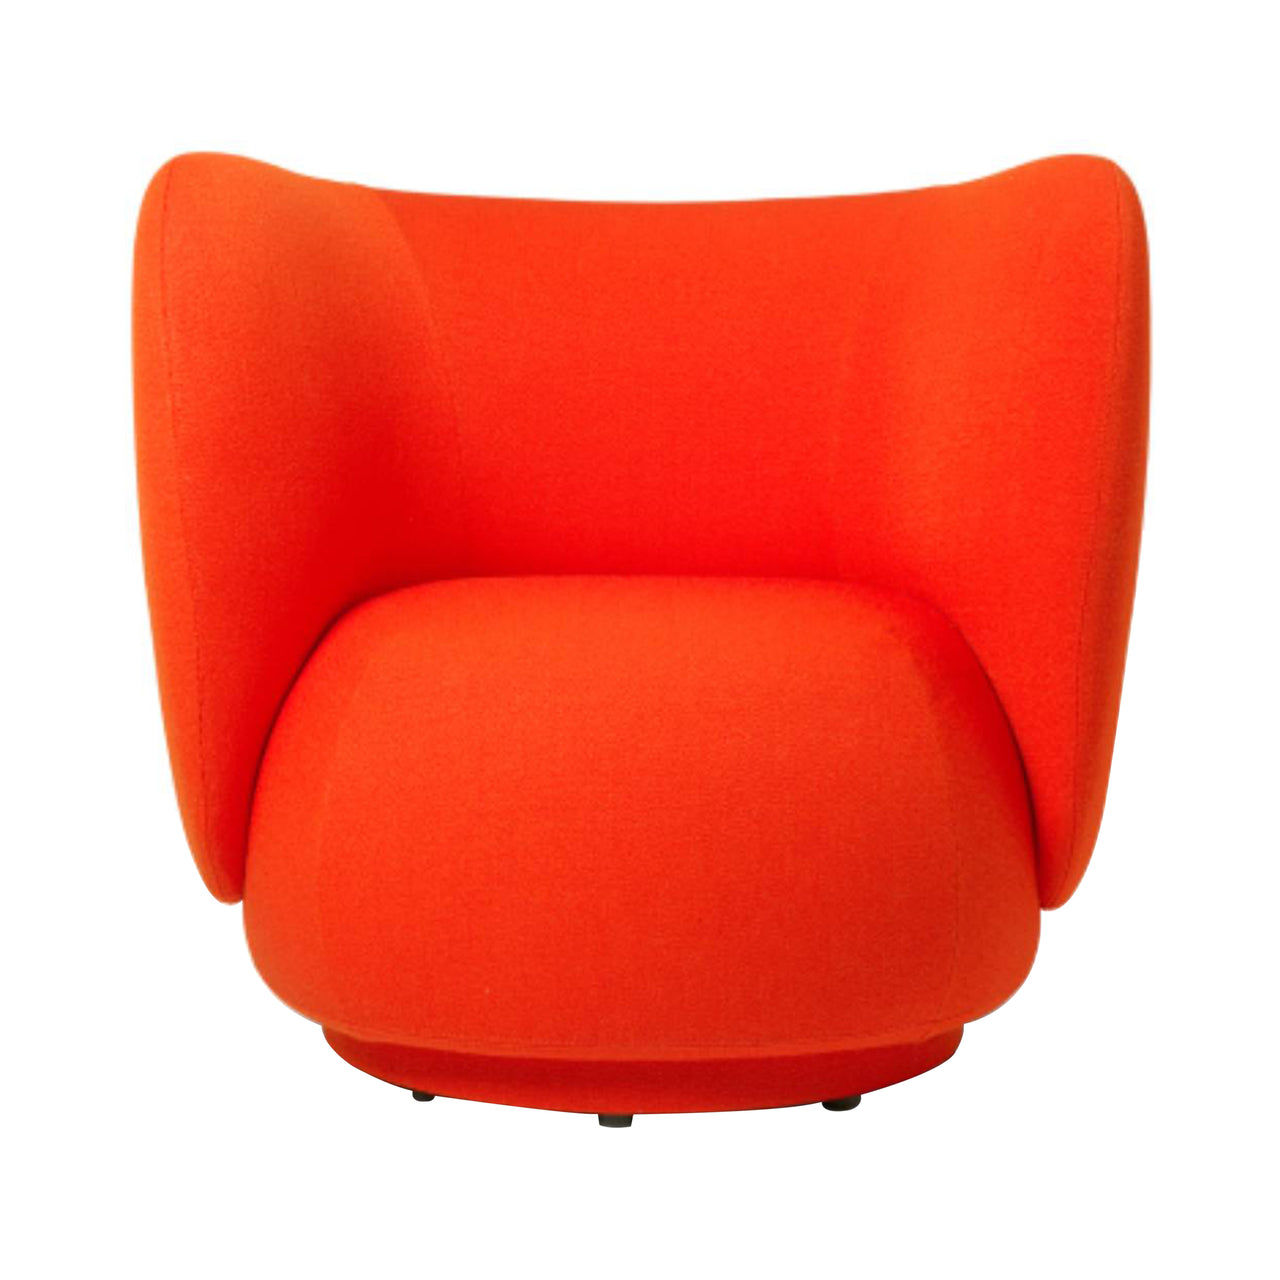 Rico Lounge Chair